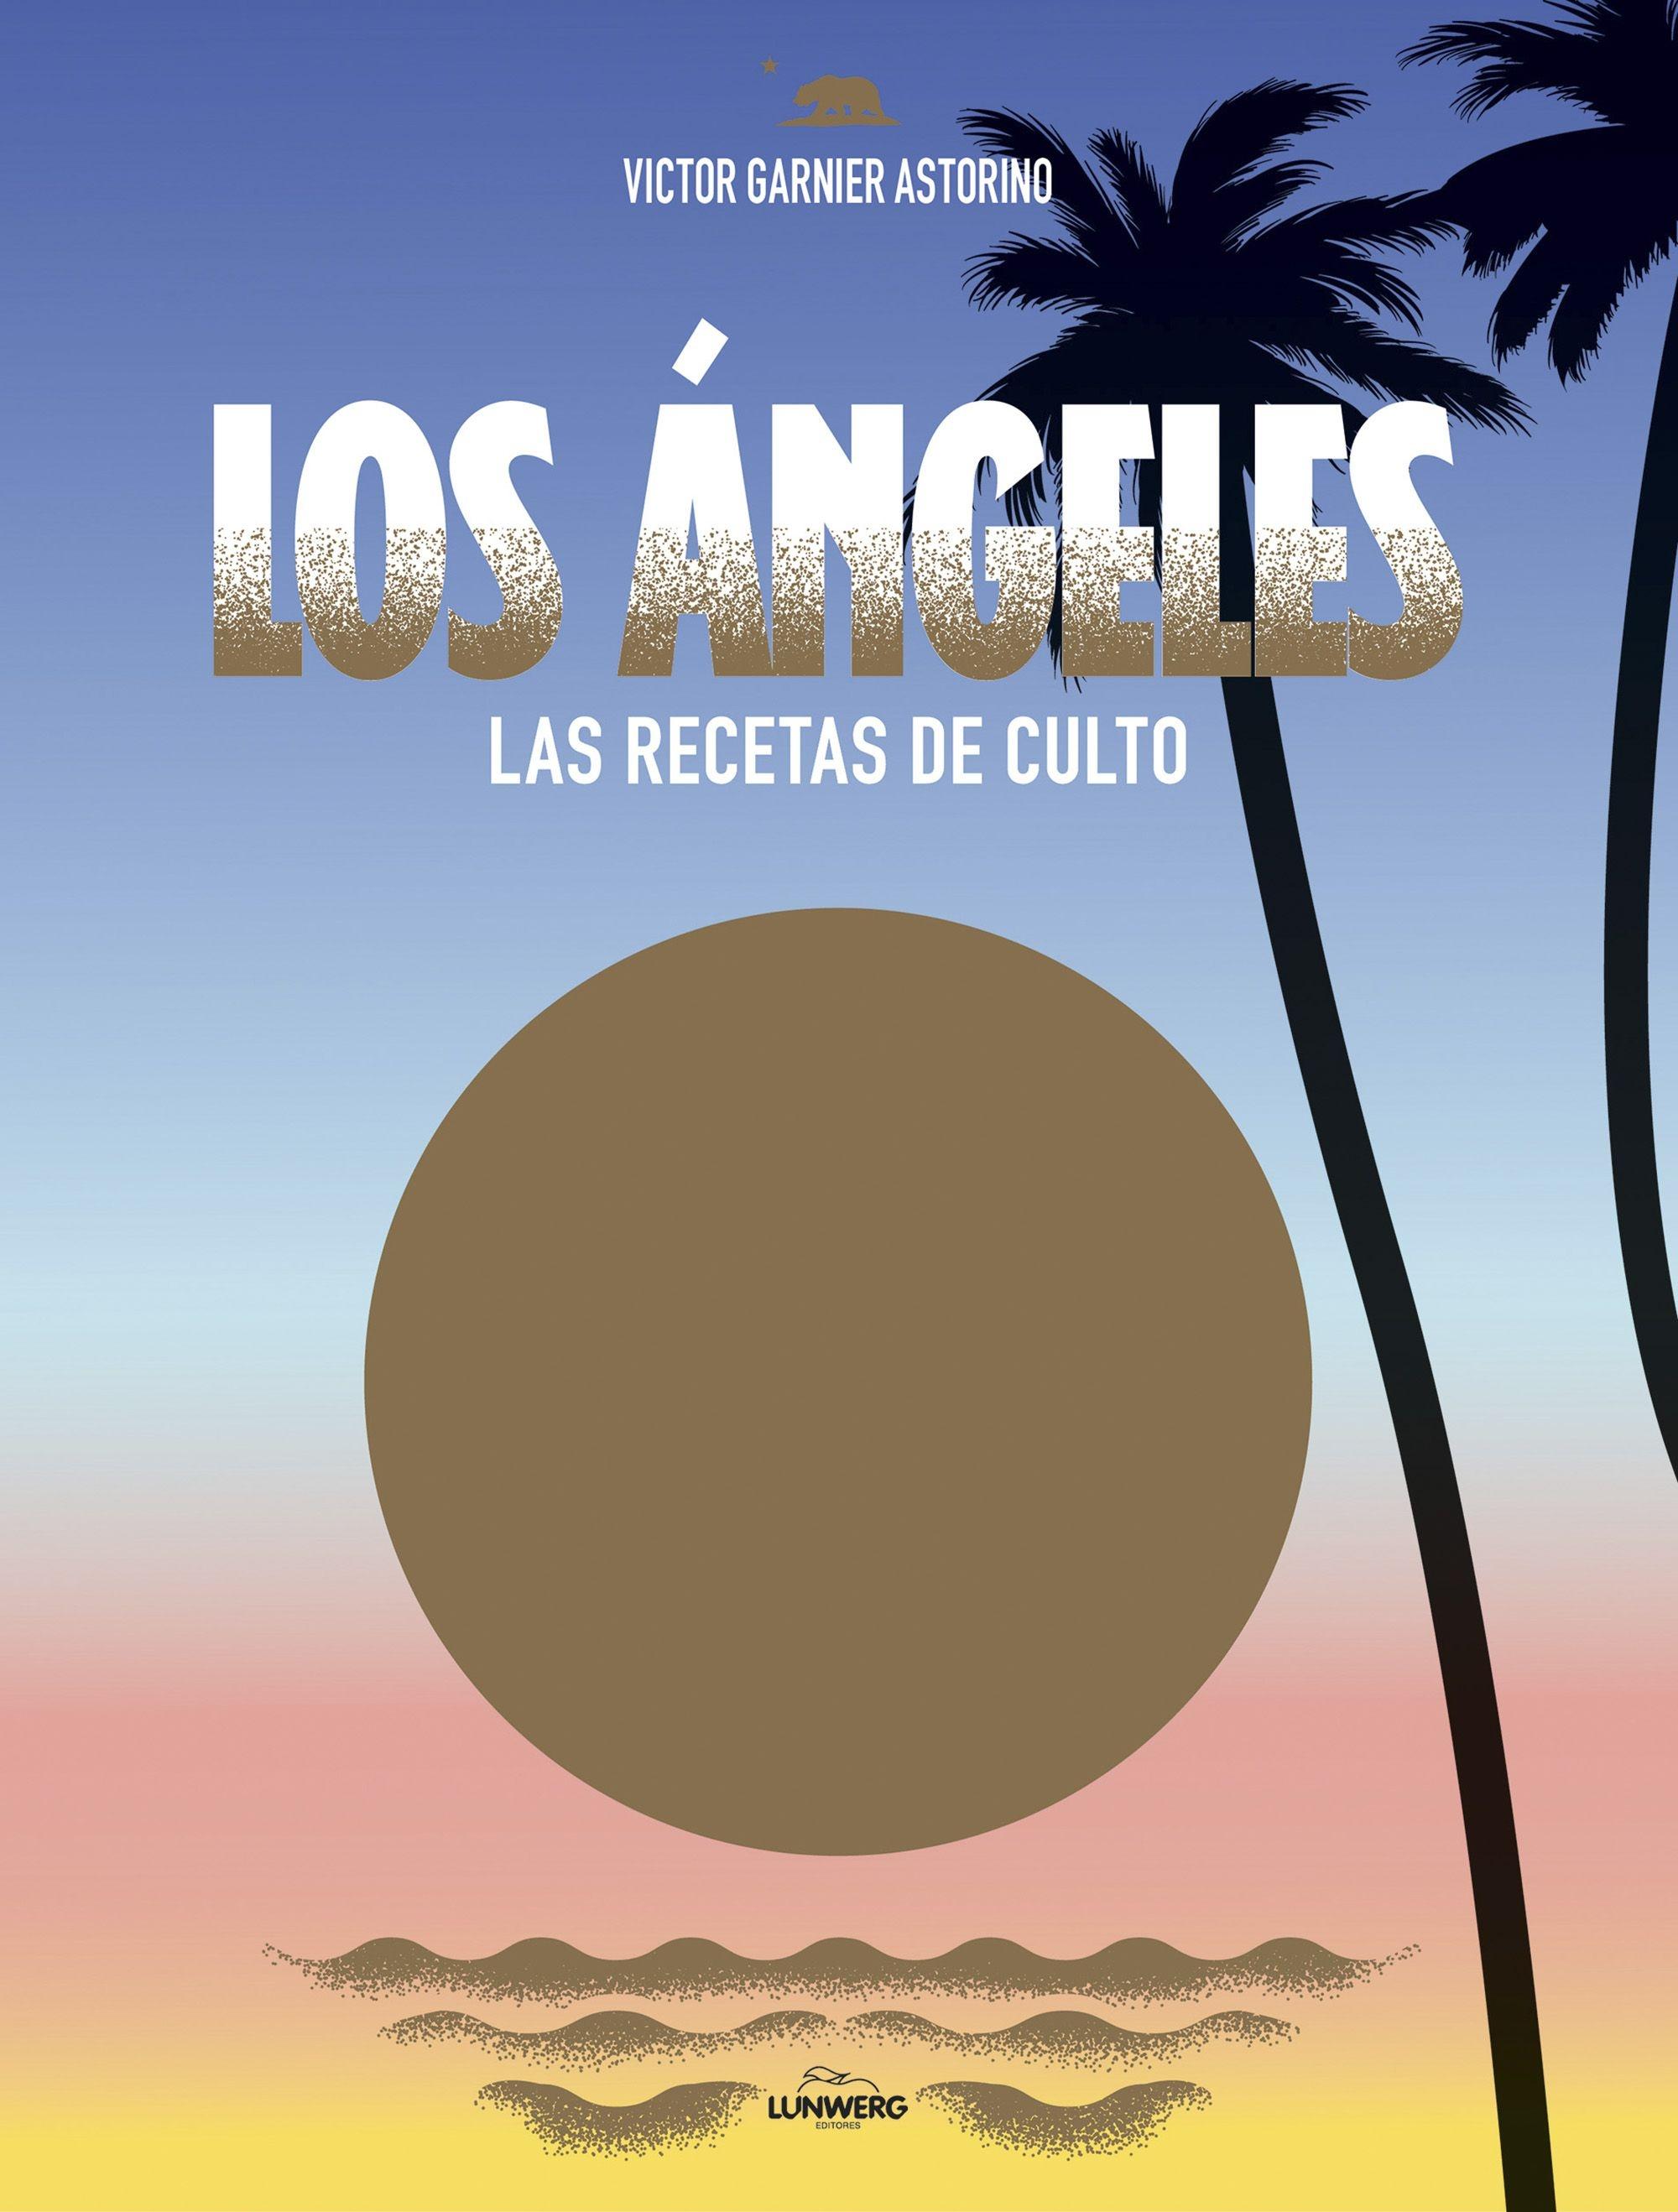 Los Ángeles "Las recetas de culto". 